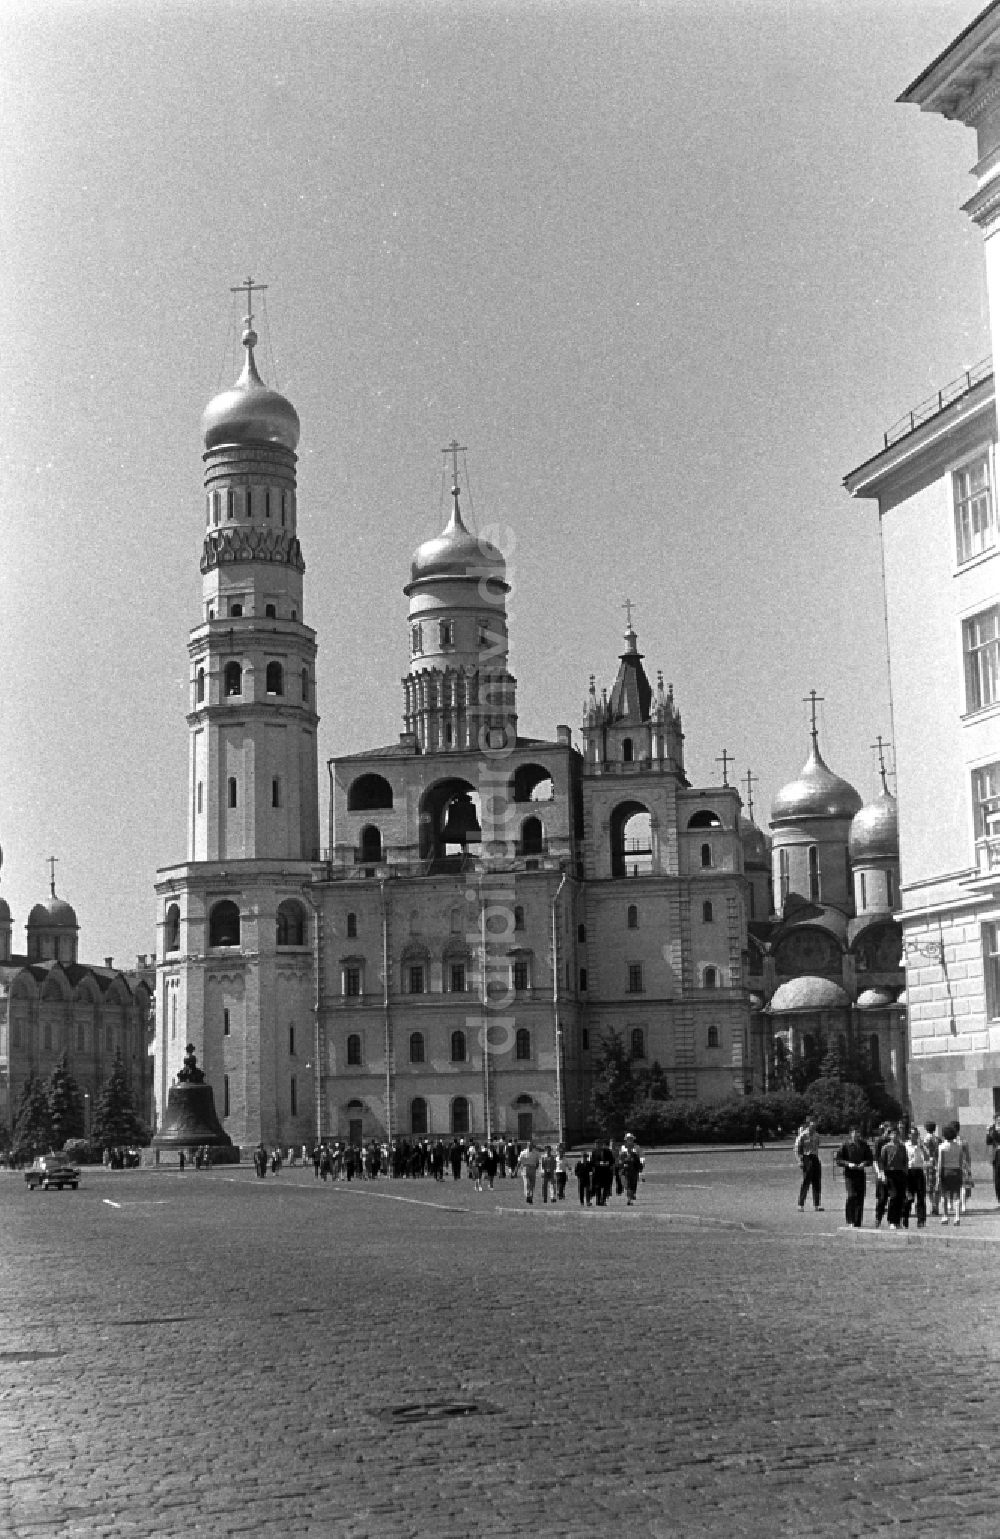 DDR-Bildarchiv: Moskau - Der Glockenturm Iwan der Große auf dem Gelände des Moskauer Kremls